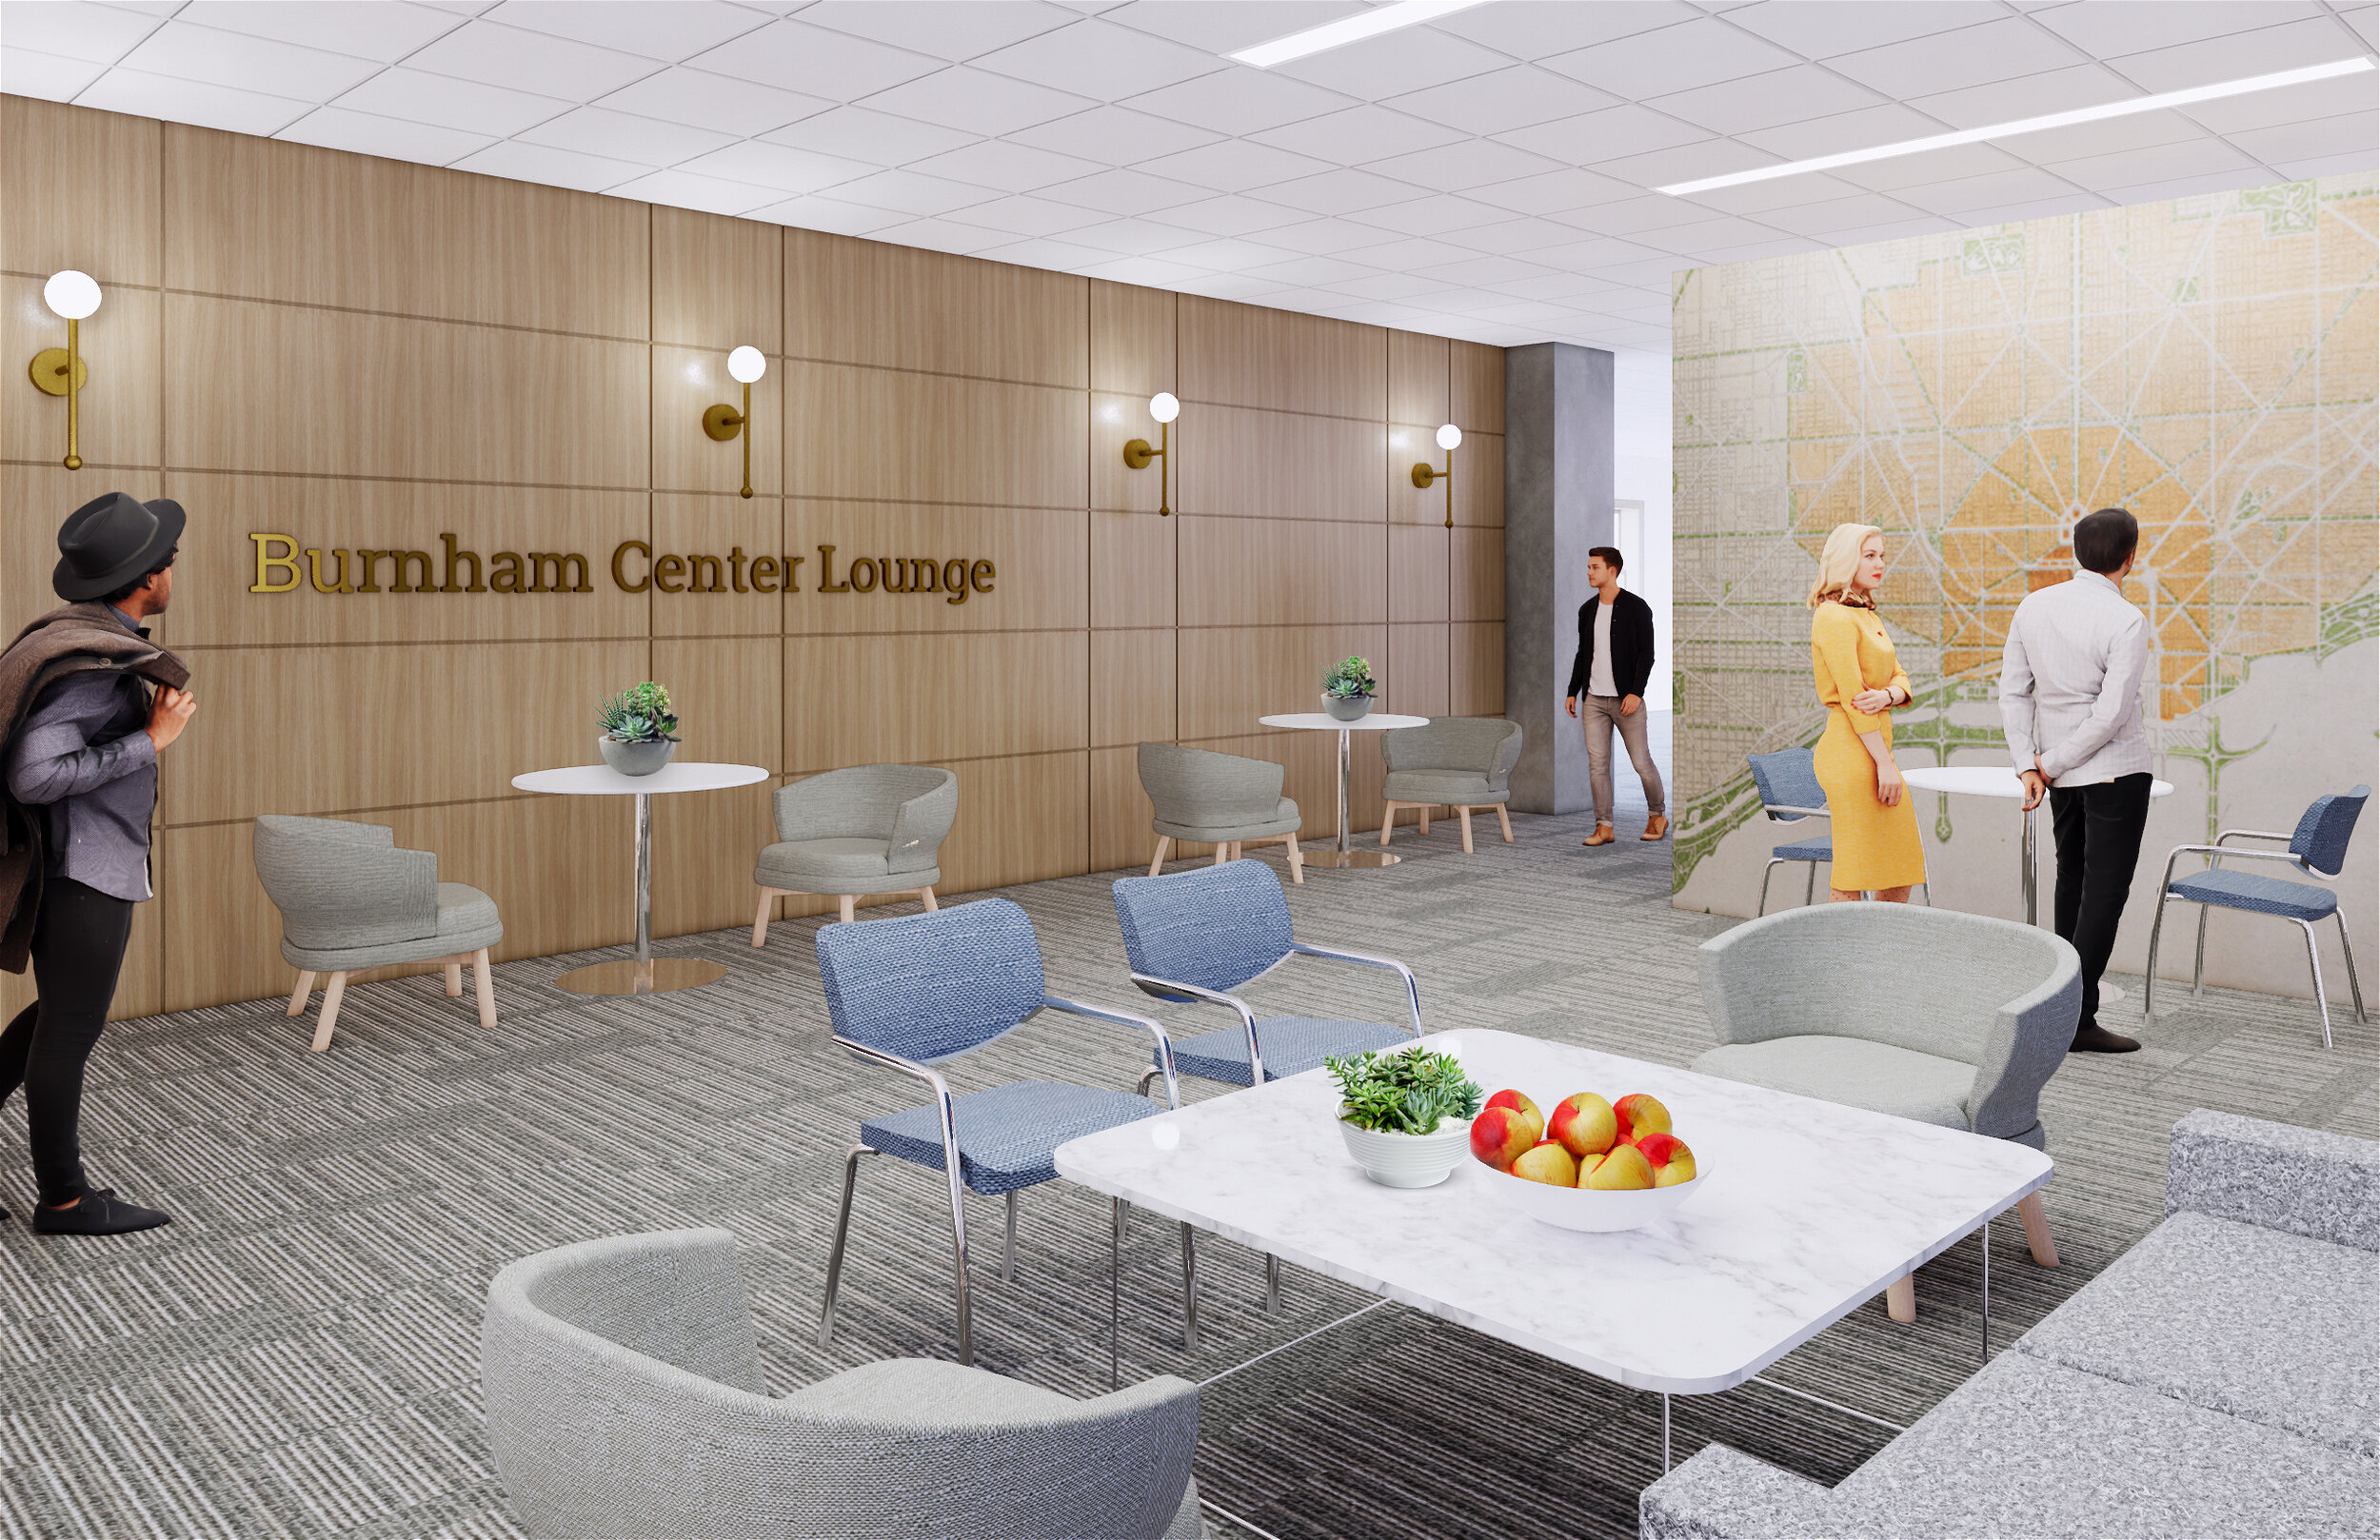 Burnham Center Lounge.jpg